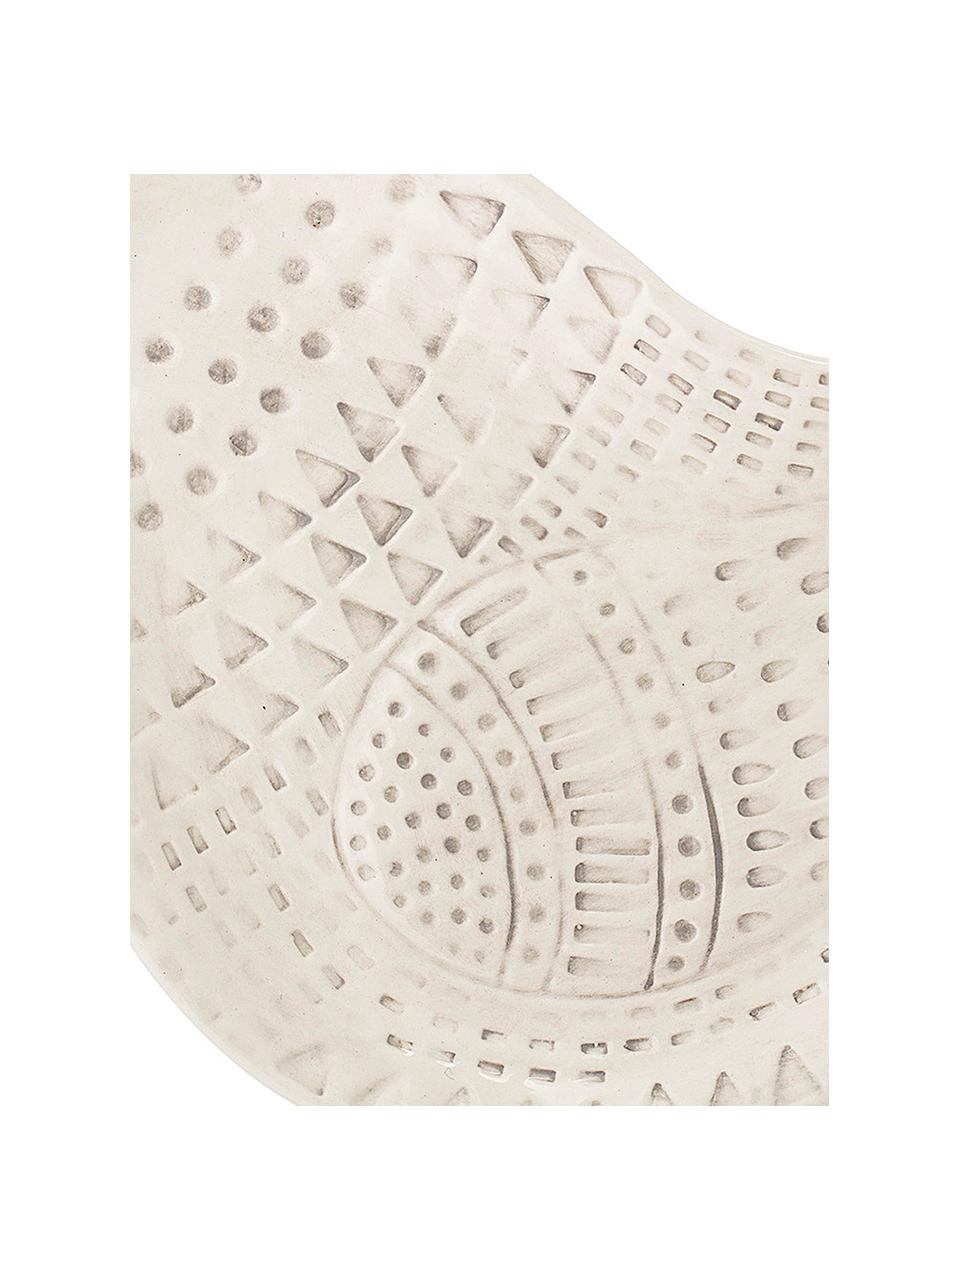 Tablett Tata, Dolomitstein, Keramik, Weiß, 18 x 29 cm